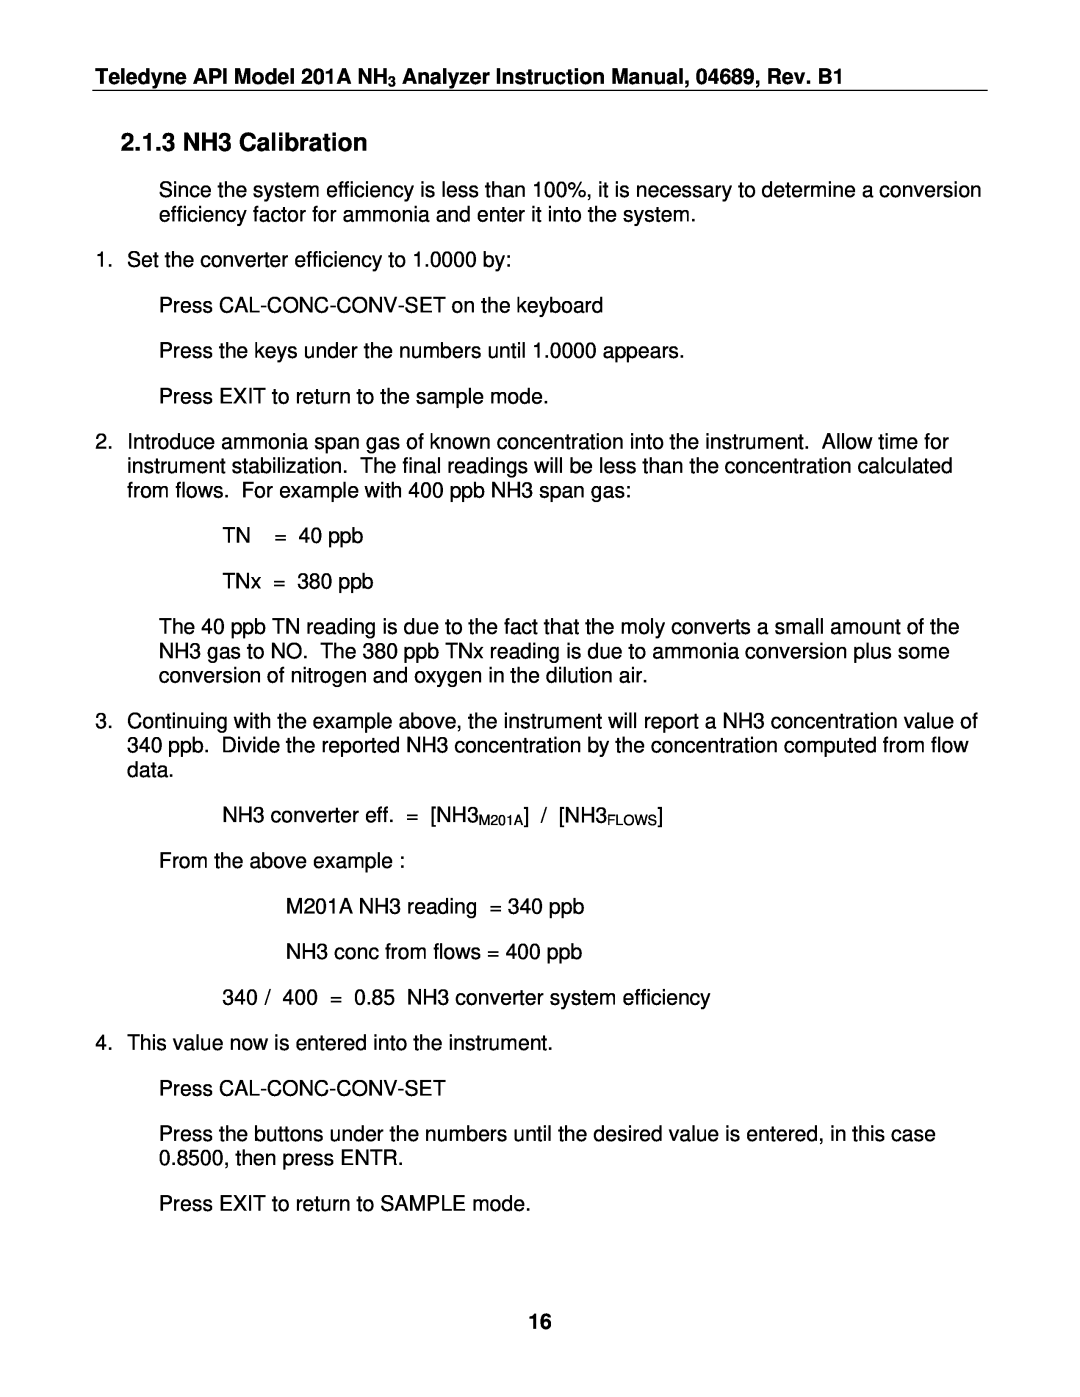 Teledyne 201A manual 2.1.3 NH3 Calibration 